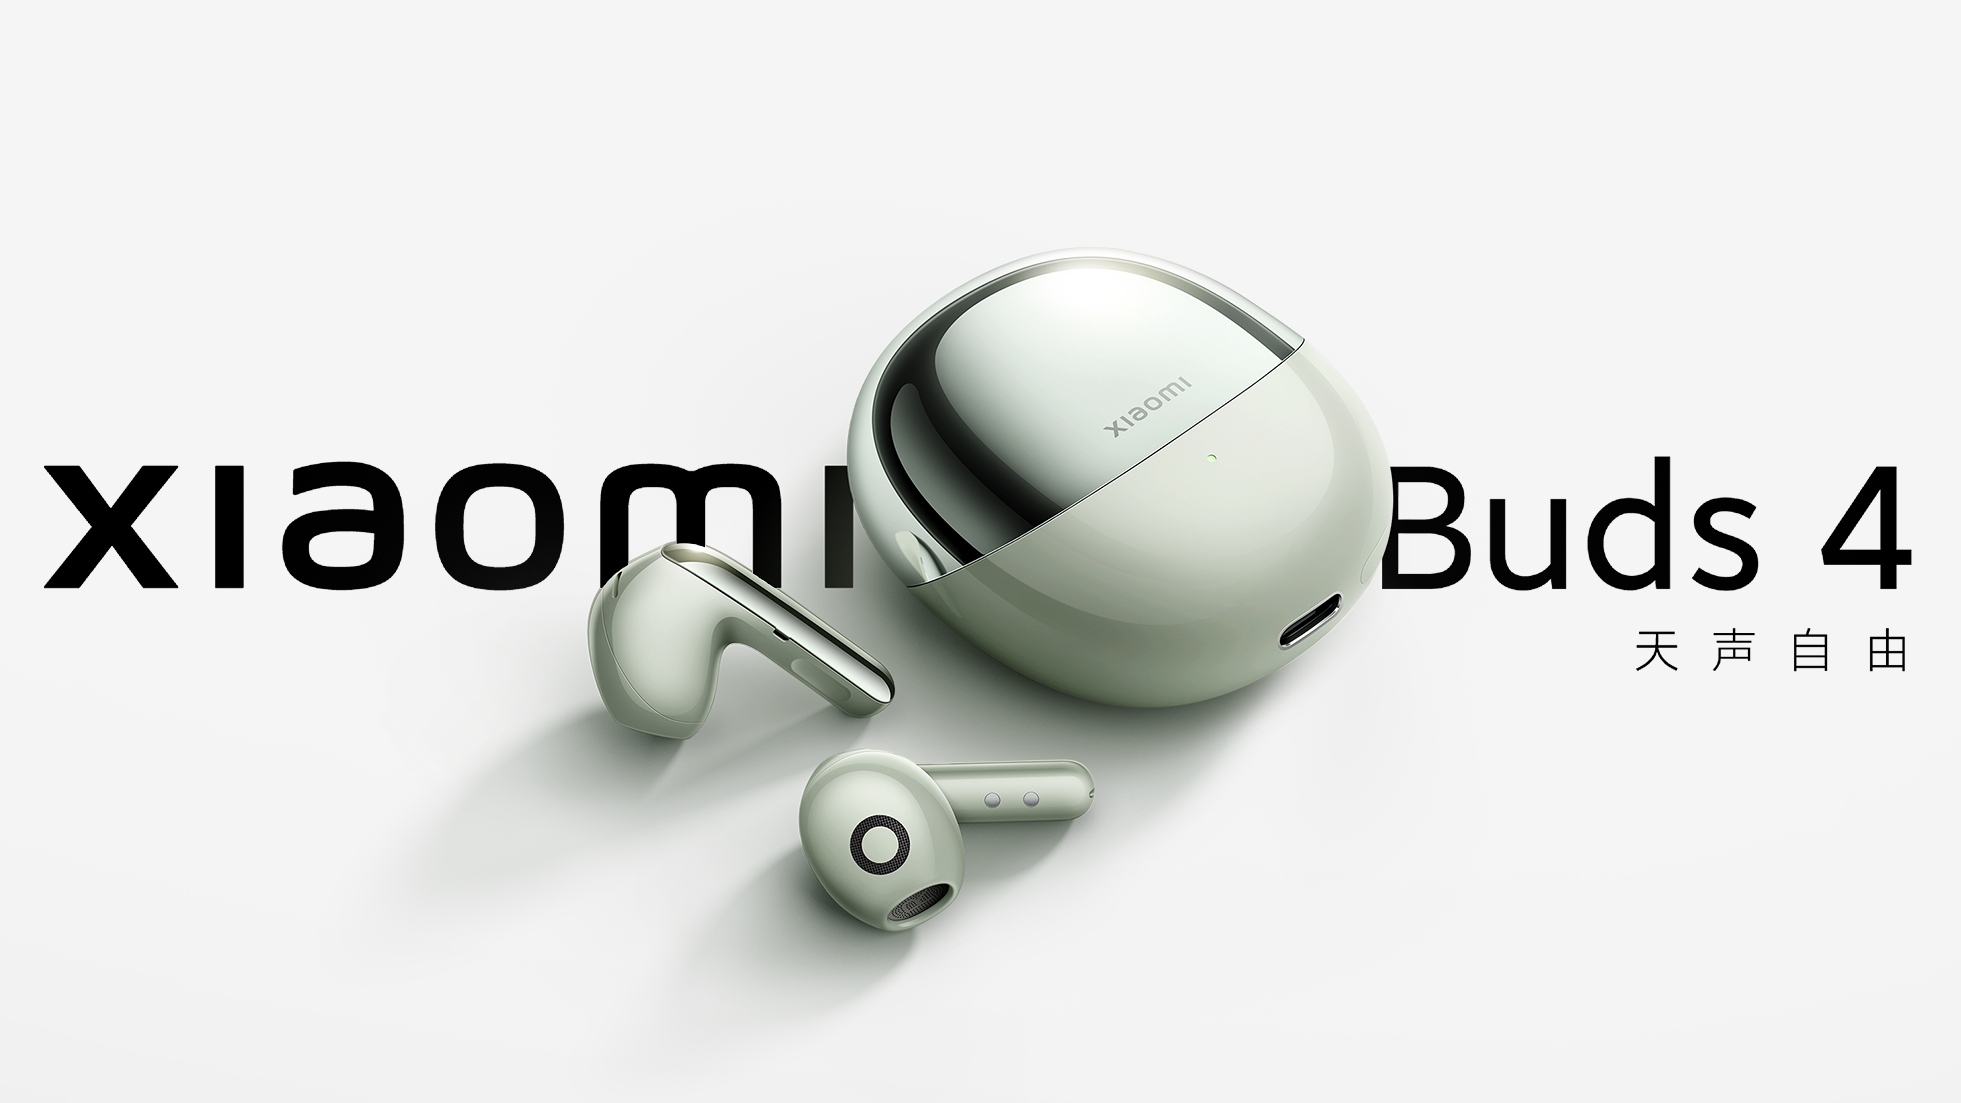 Xiaomi Buds 4: Štýlové Bluetooth slúchadlá s kvalitným zvukom a ANC